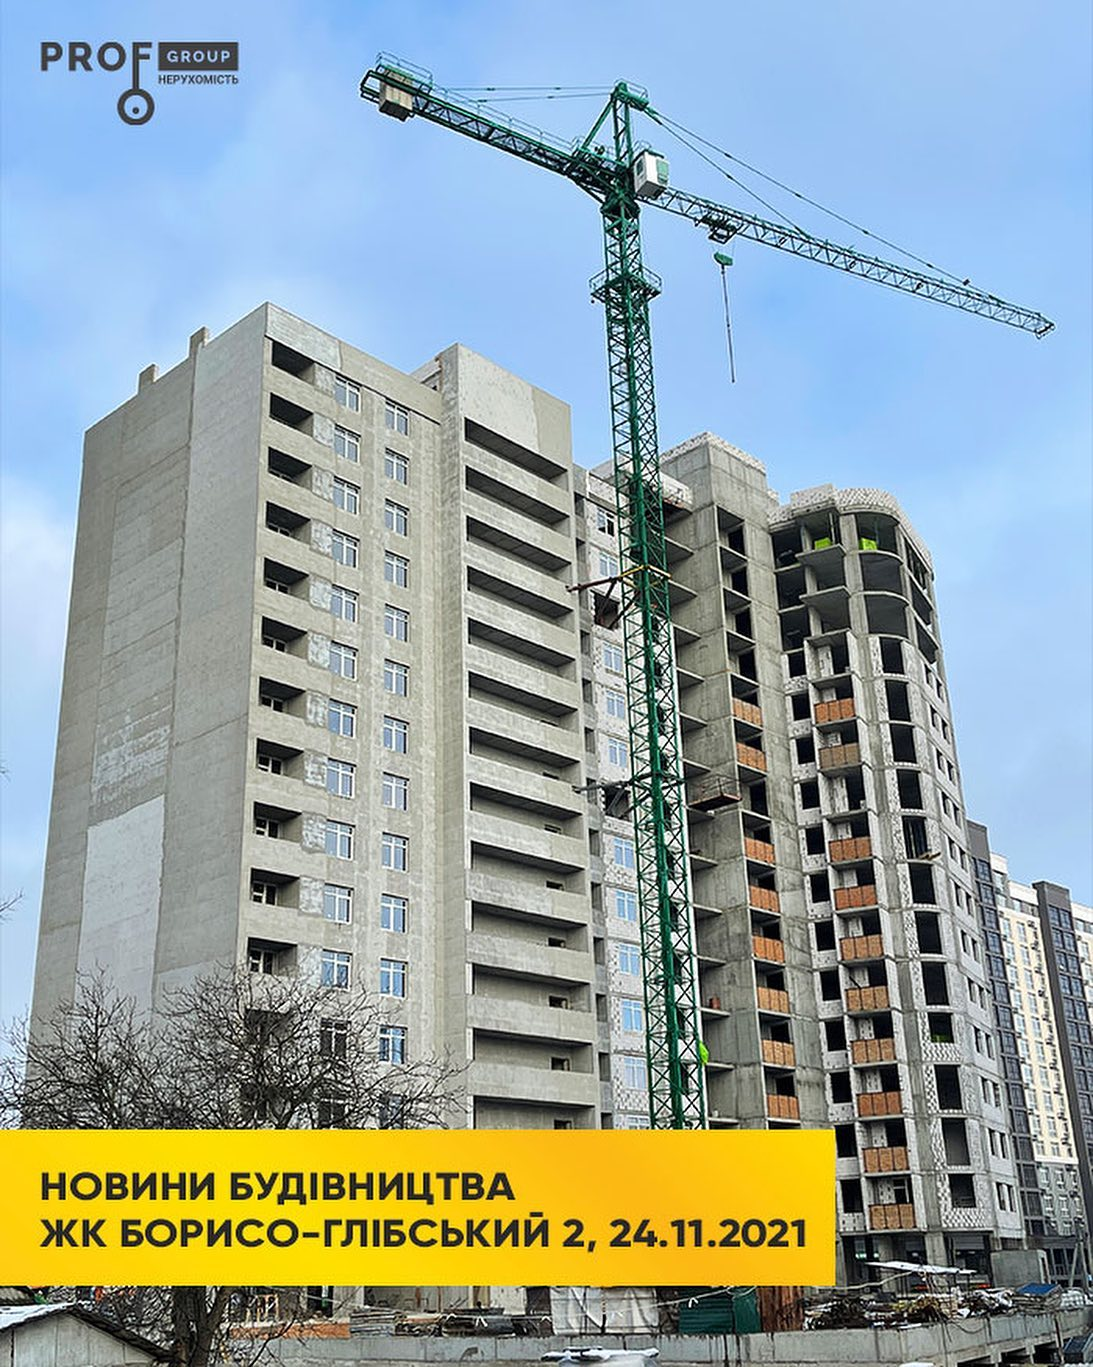 Хід будівництва ЖК Борисо-Глібський 2, лист, 2021 рік